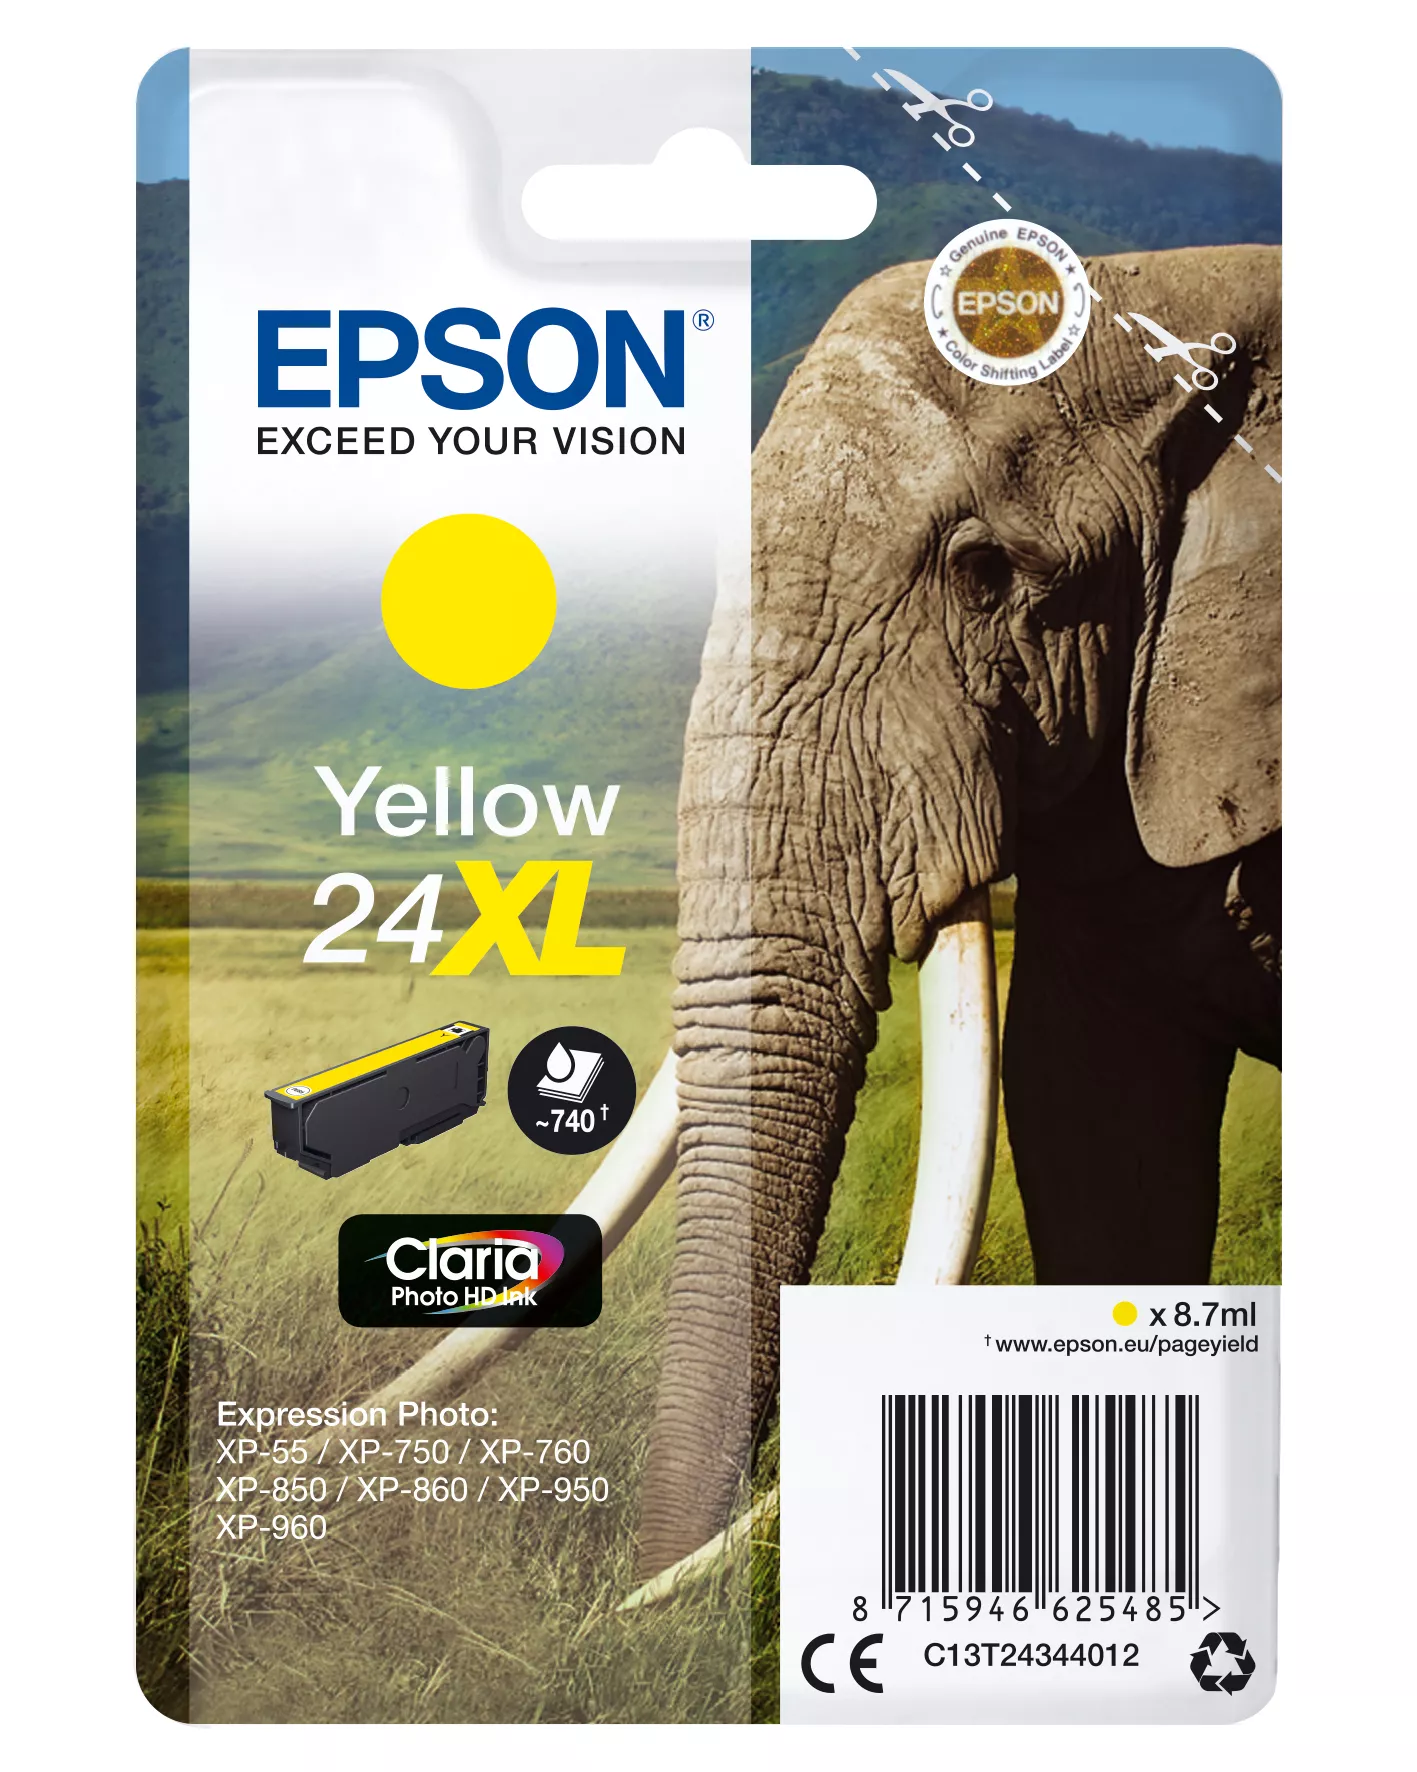 Achat EPSON 24XL cartouche dencre jaune haute capacité 8.7ml sur hello RSE